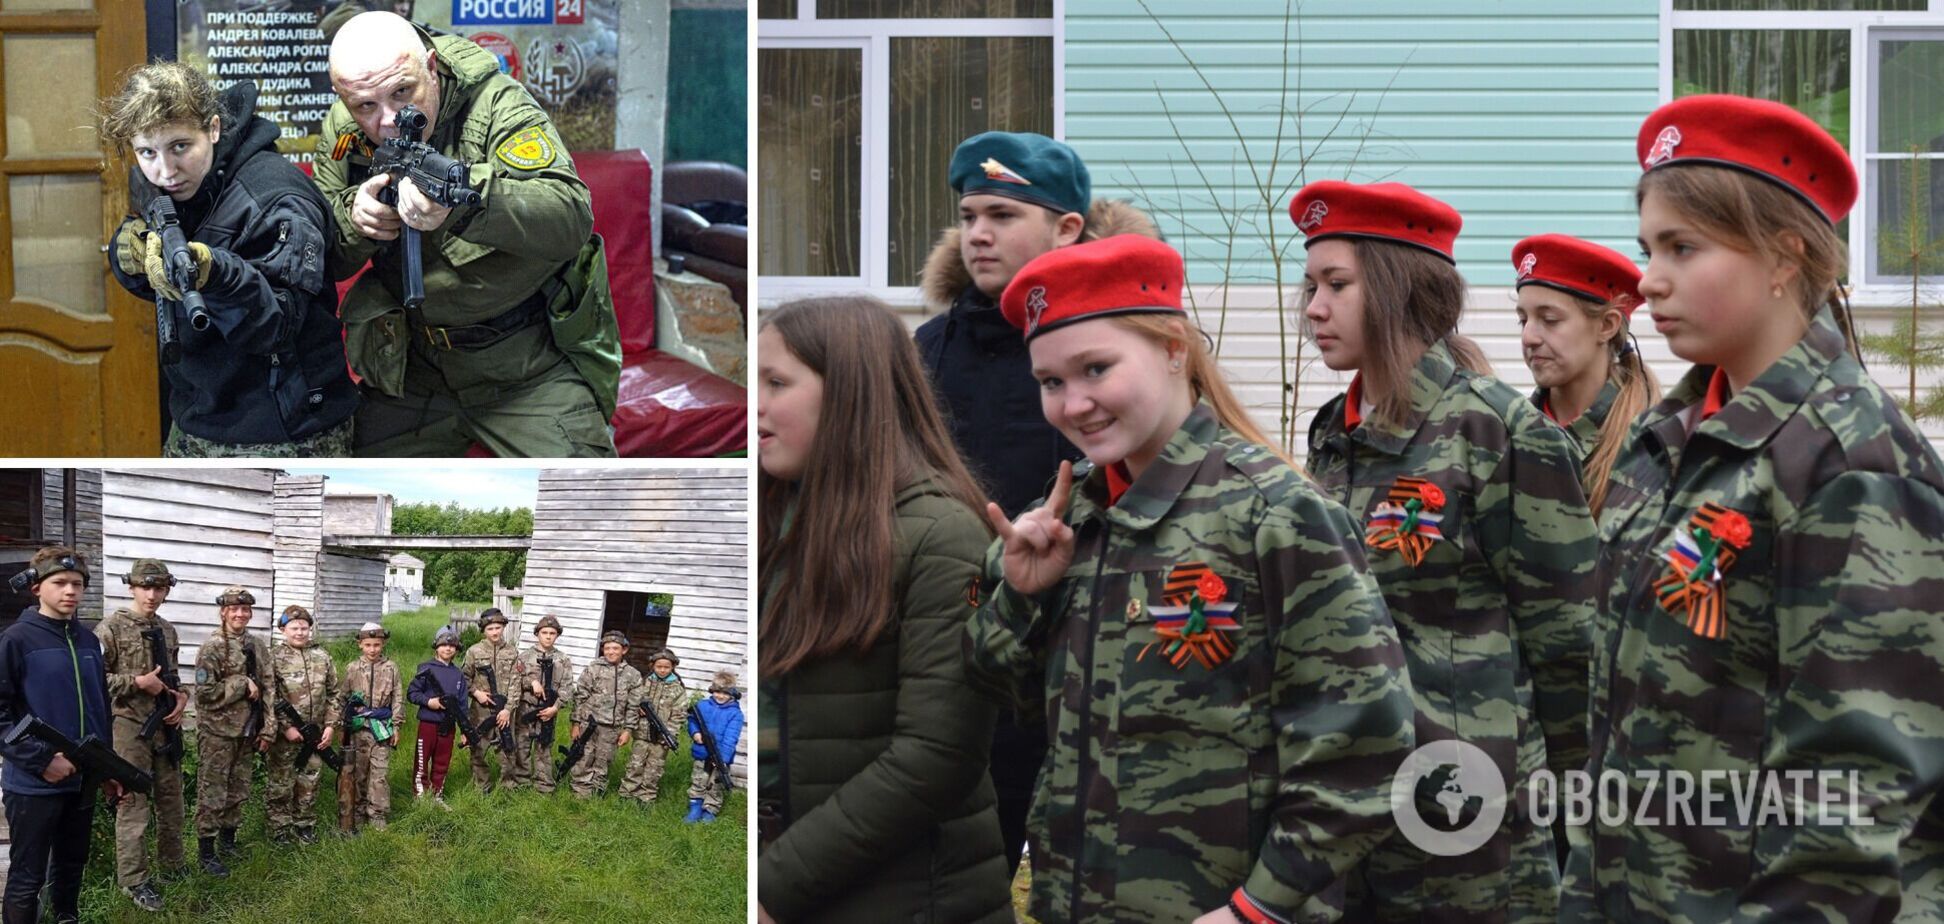 Юнармия, ДОСААФ, курсы: как в России детей учат убивать украинцев